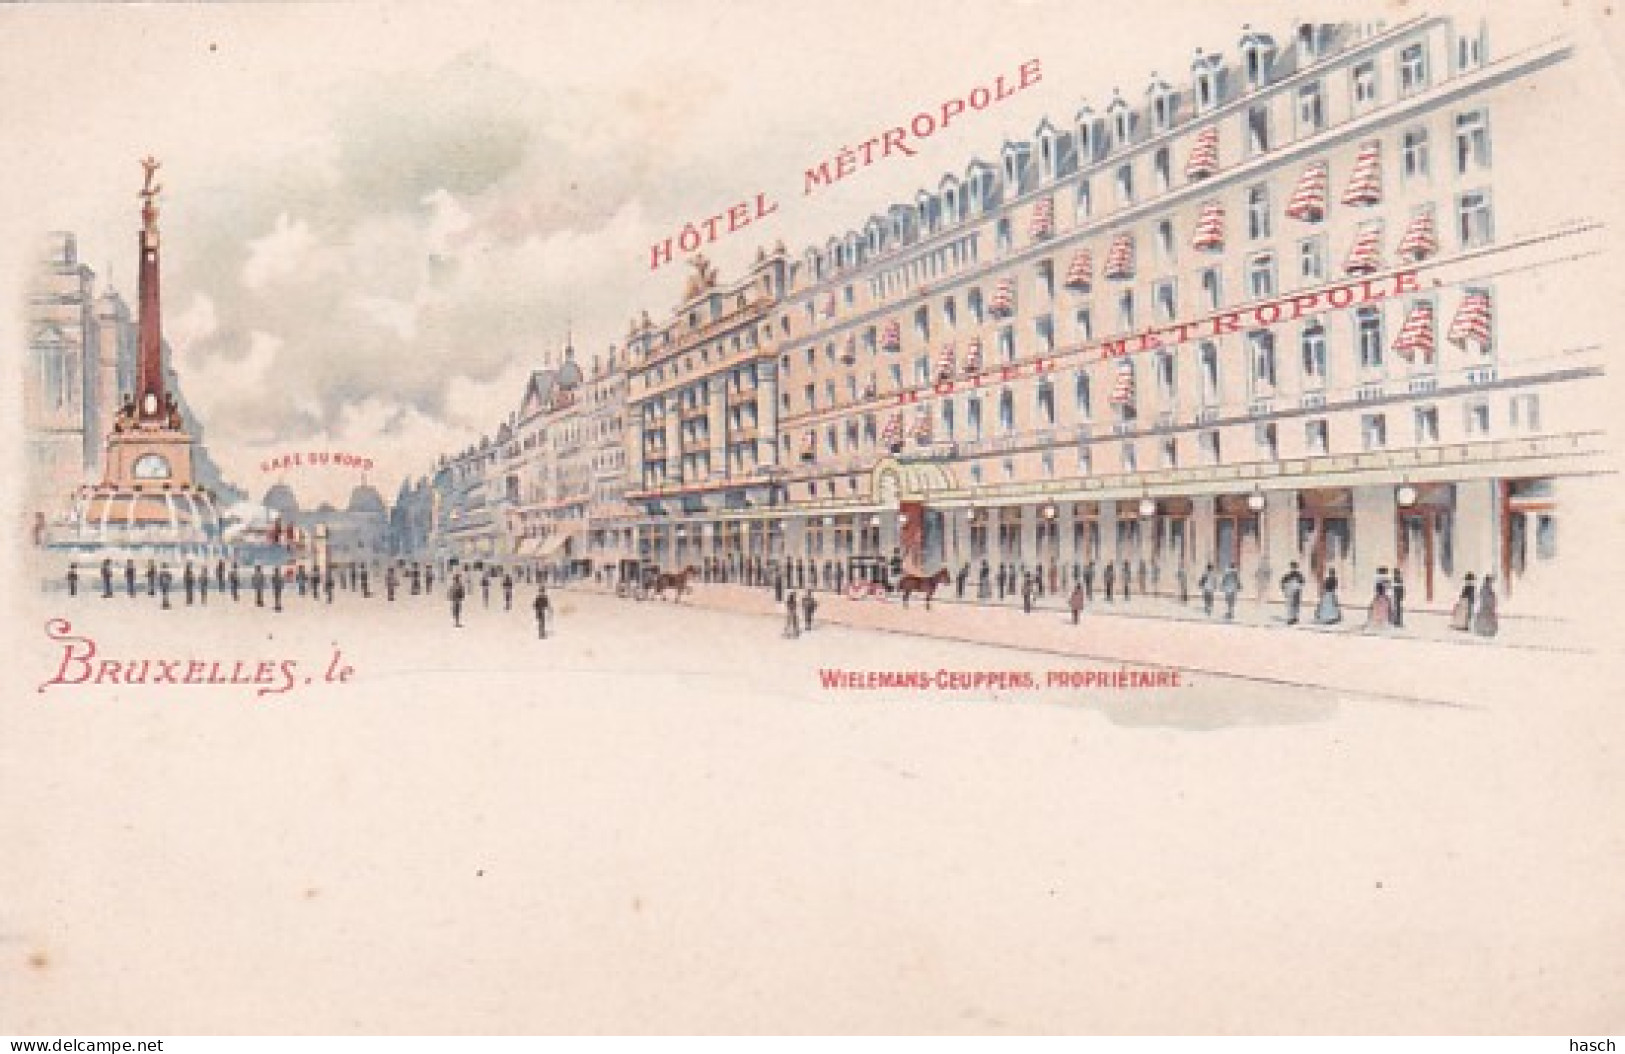 1859	20	Bruxelles, Le Hôtel Métropole-Gare Du Nord. - Cafés, Hôtels, Restaurants